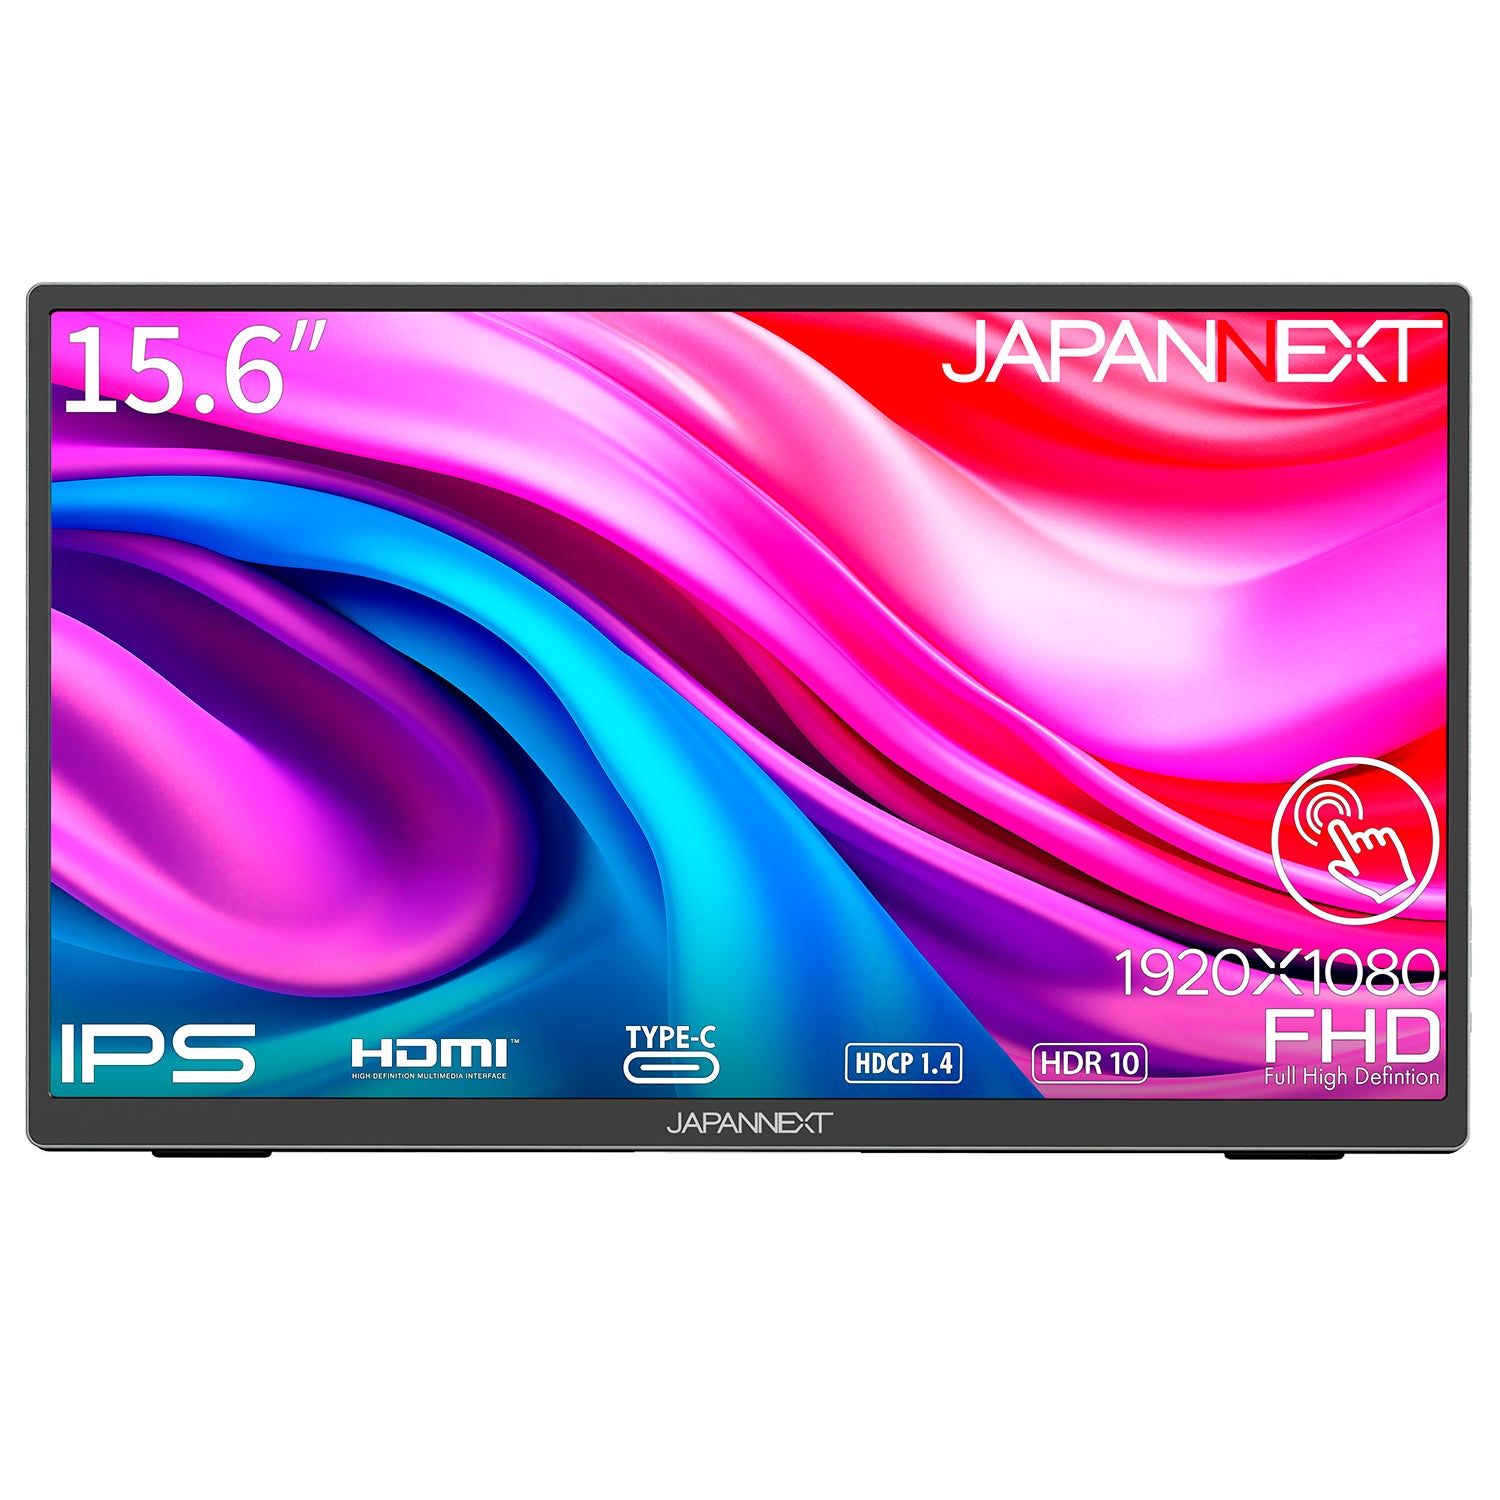 JAPANNEXT 15.6インチ タッチパネル搭載 フルHD(1920x1080)解像度